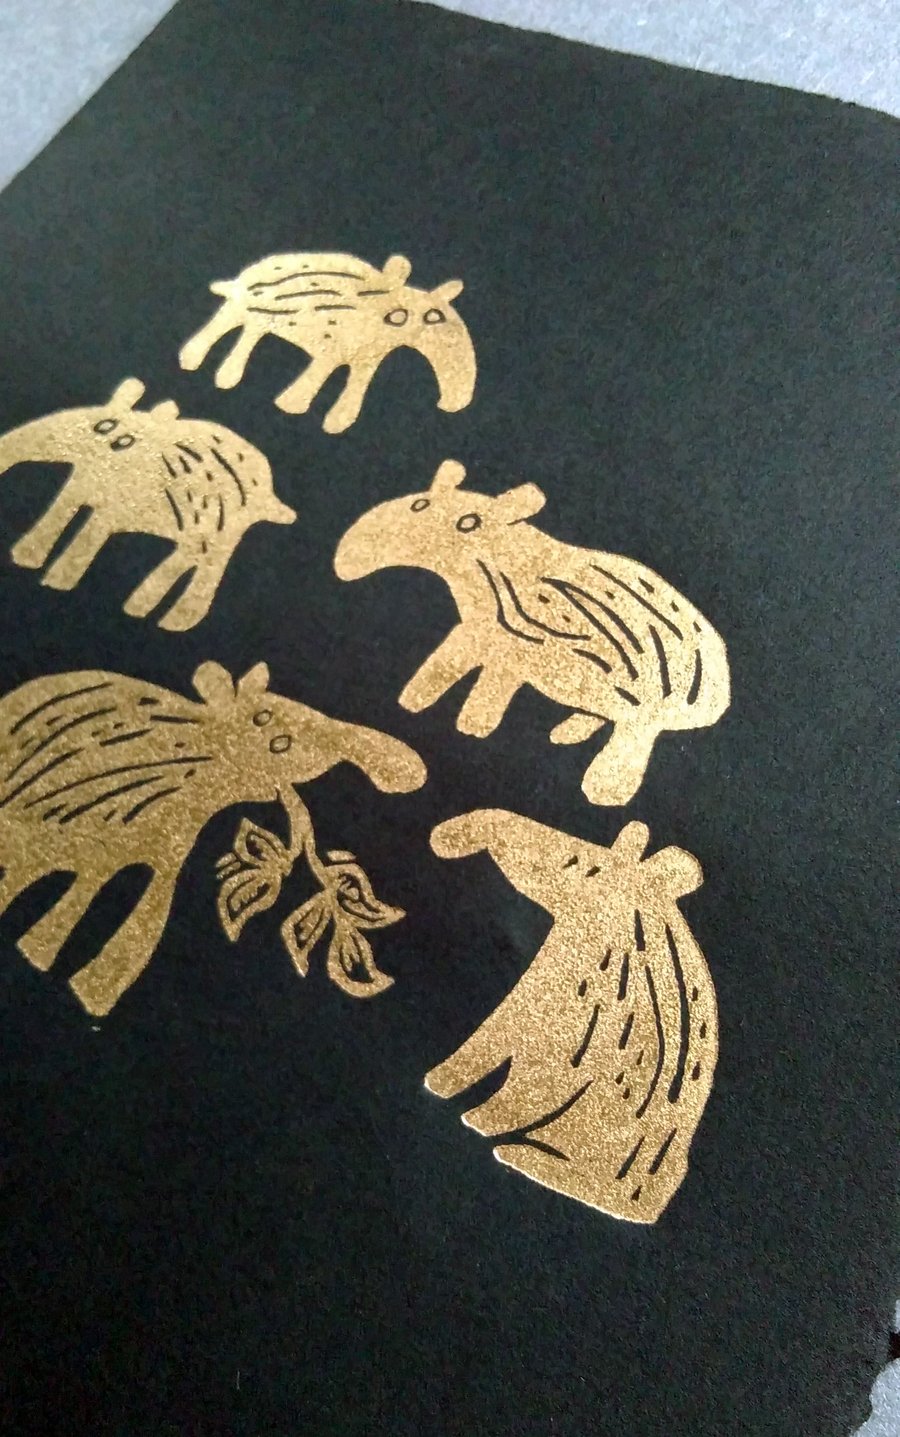 Five Gold Baby Tapirs - lino cut print